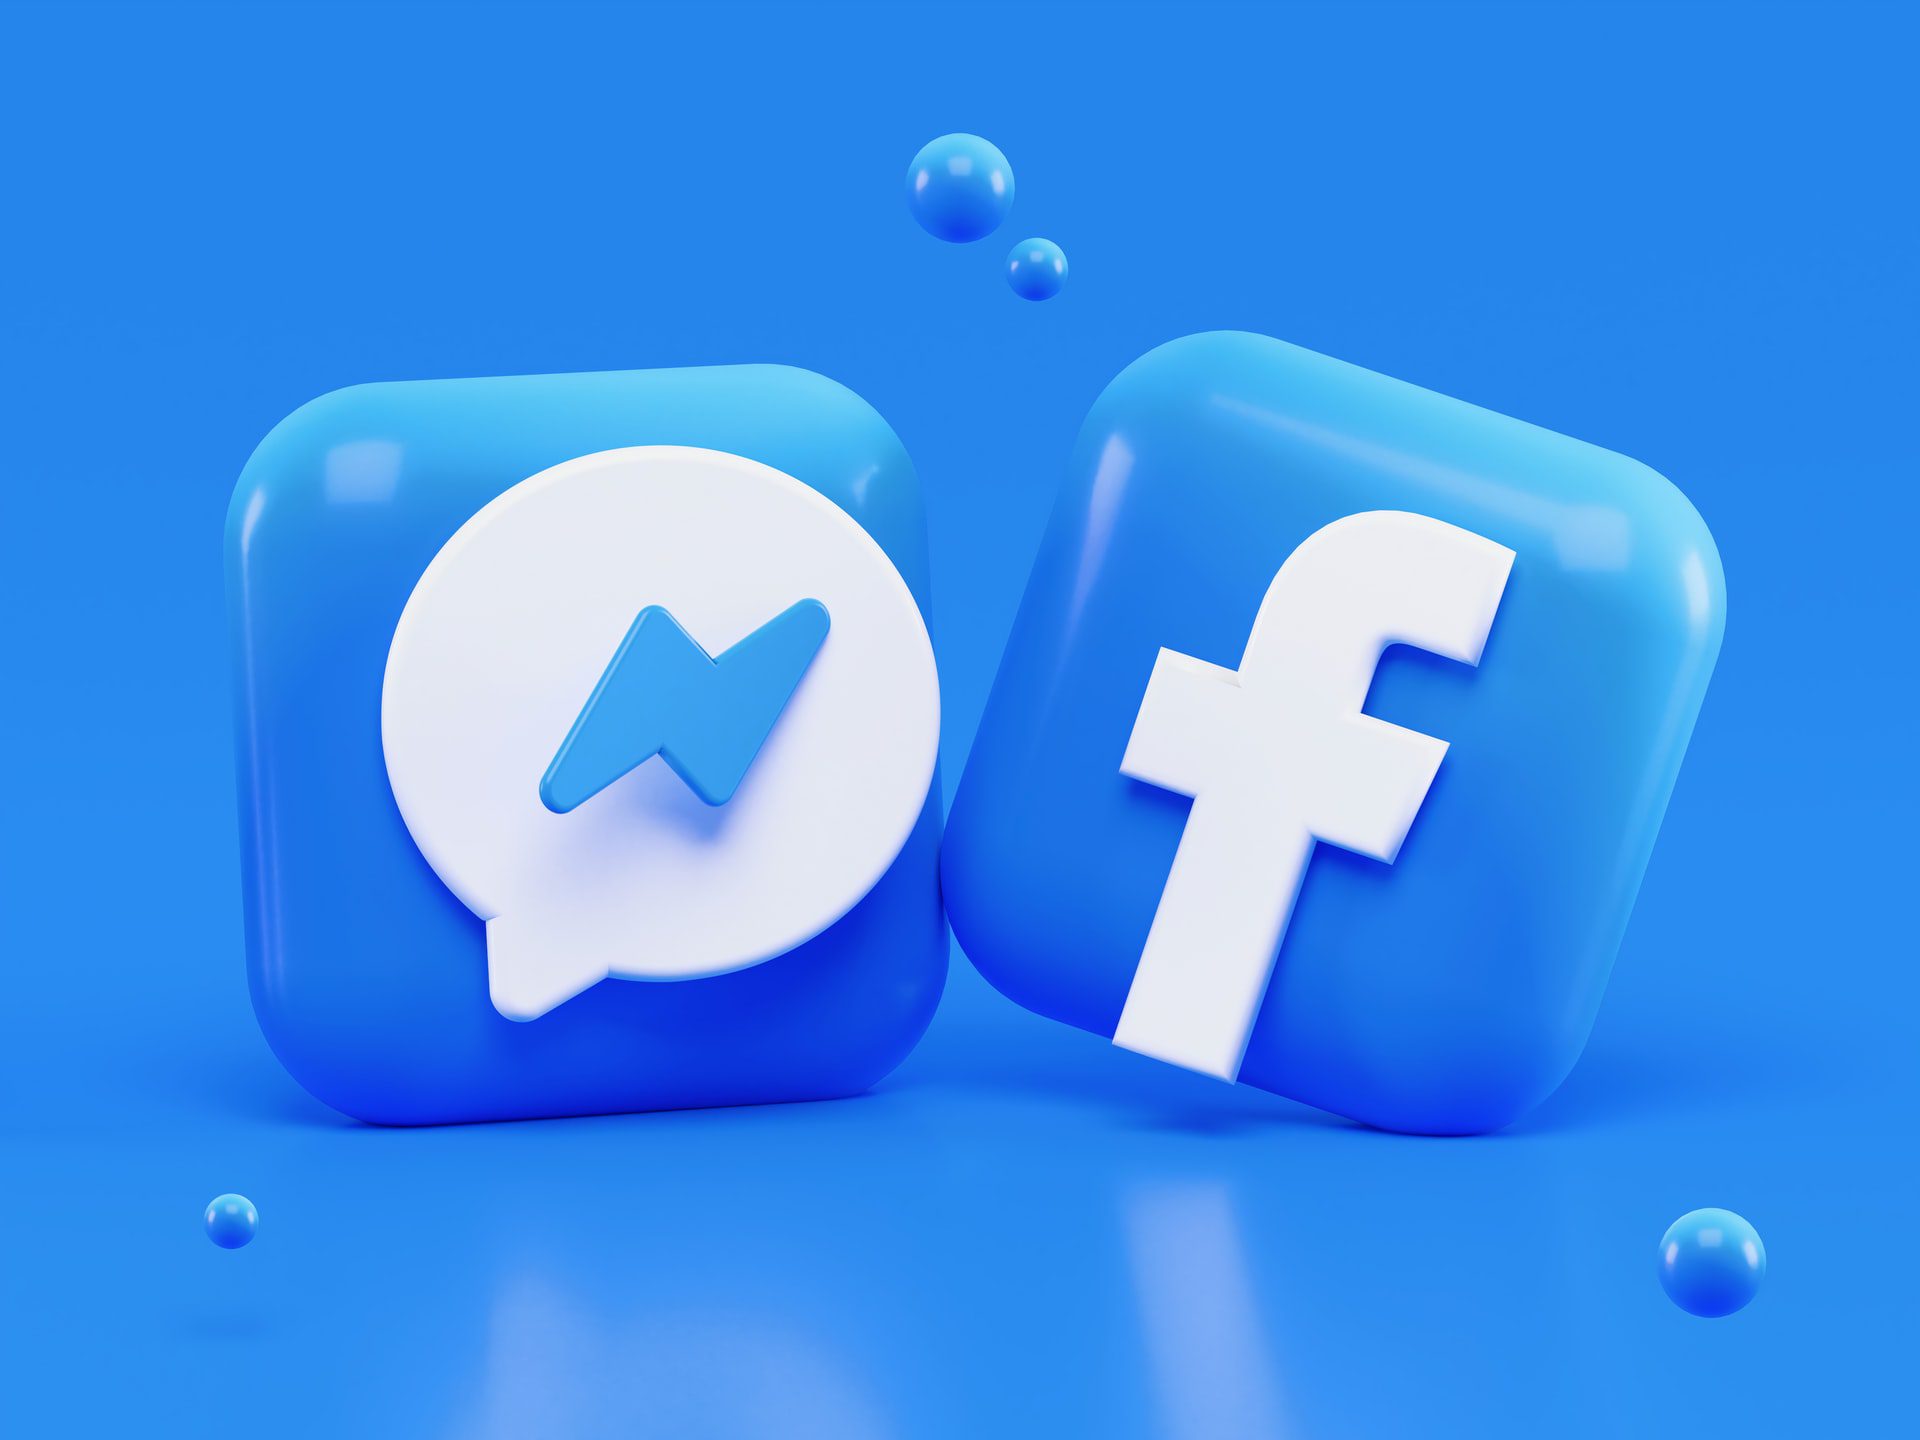 Iconos en 3D de Facebook Ads y Messenger